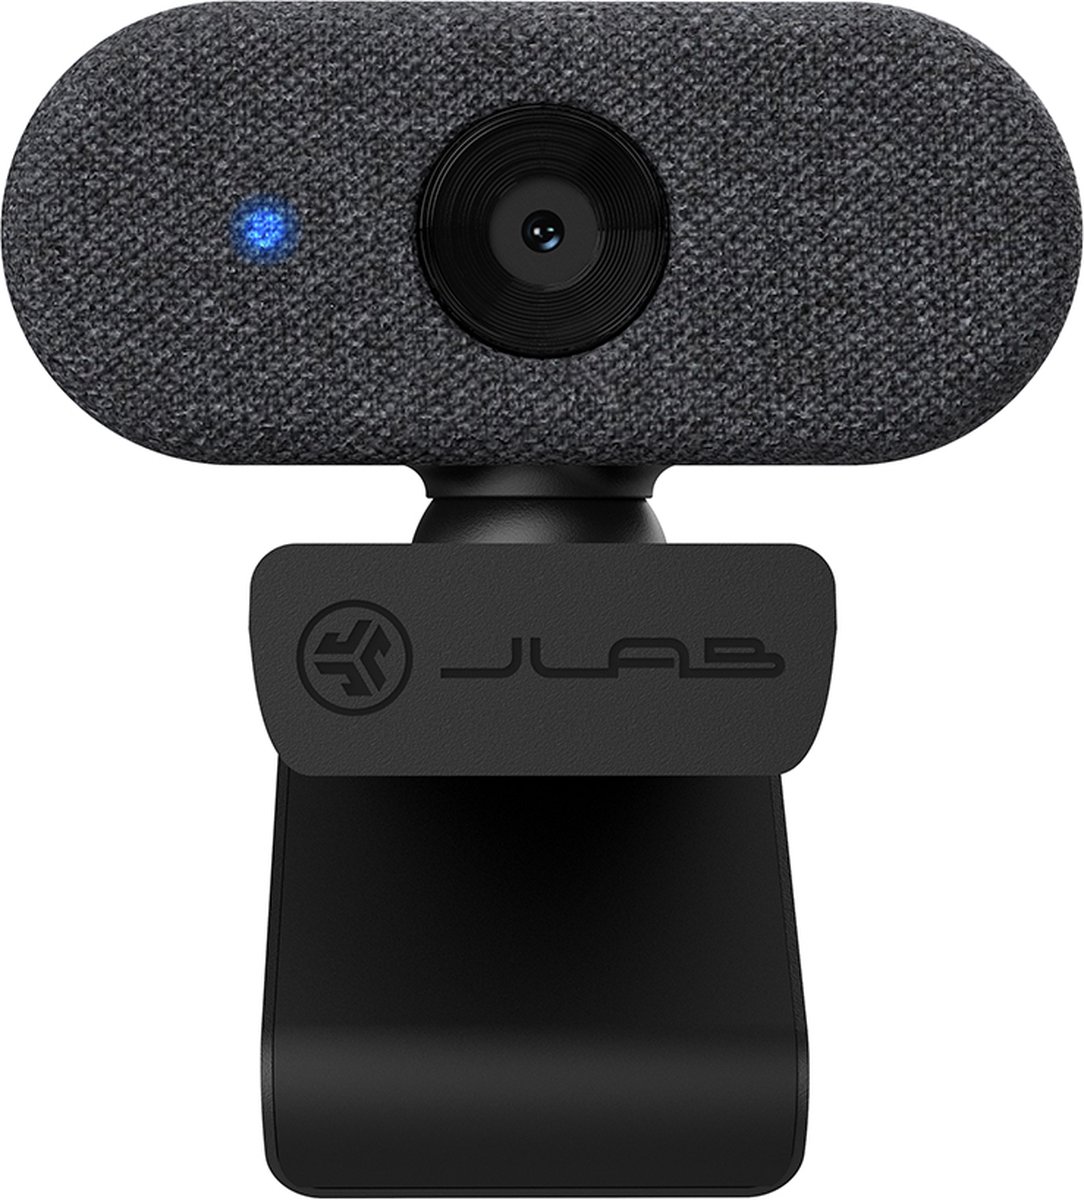 JLAB GO Webcam Voor Pc - Met Microfoon - USB 2,1 - Megapixels - 30 FPS